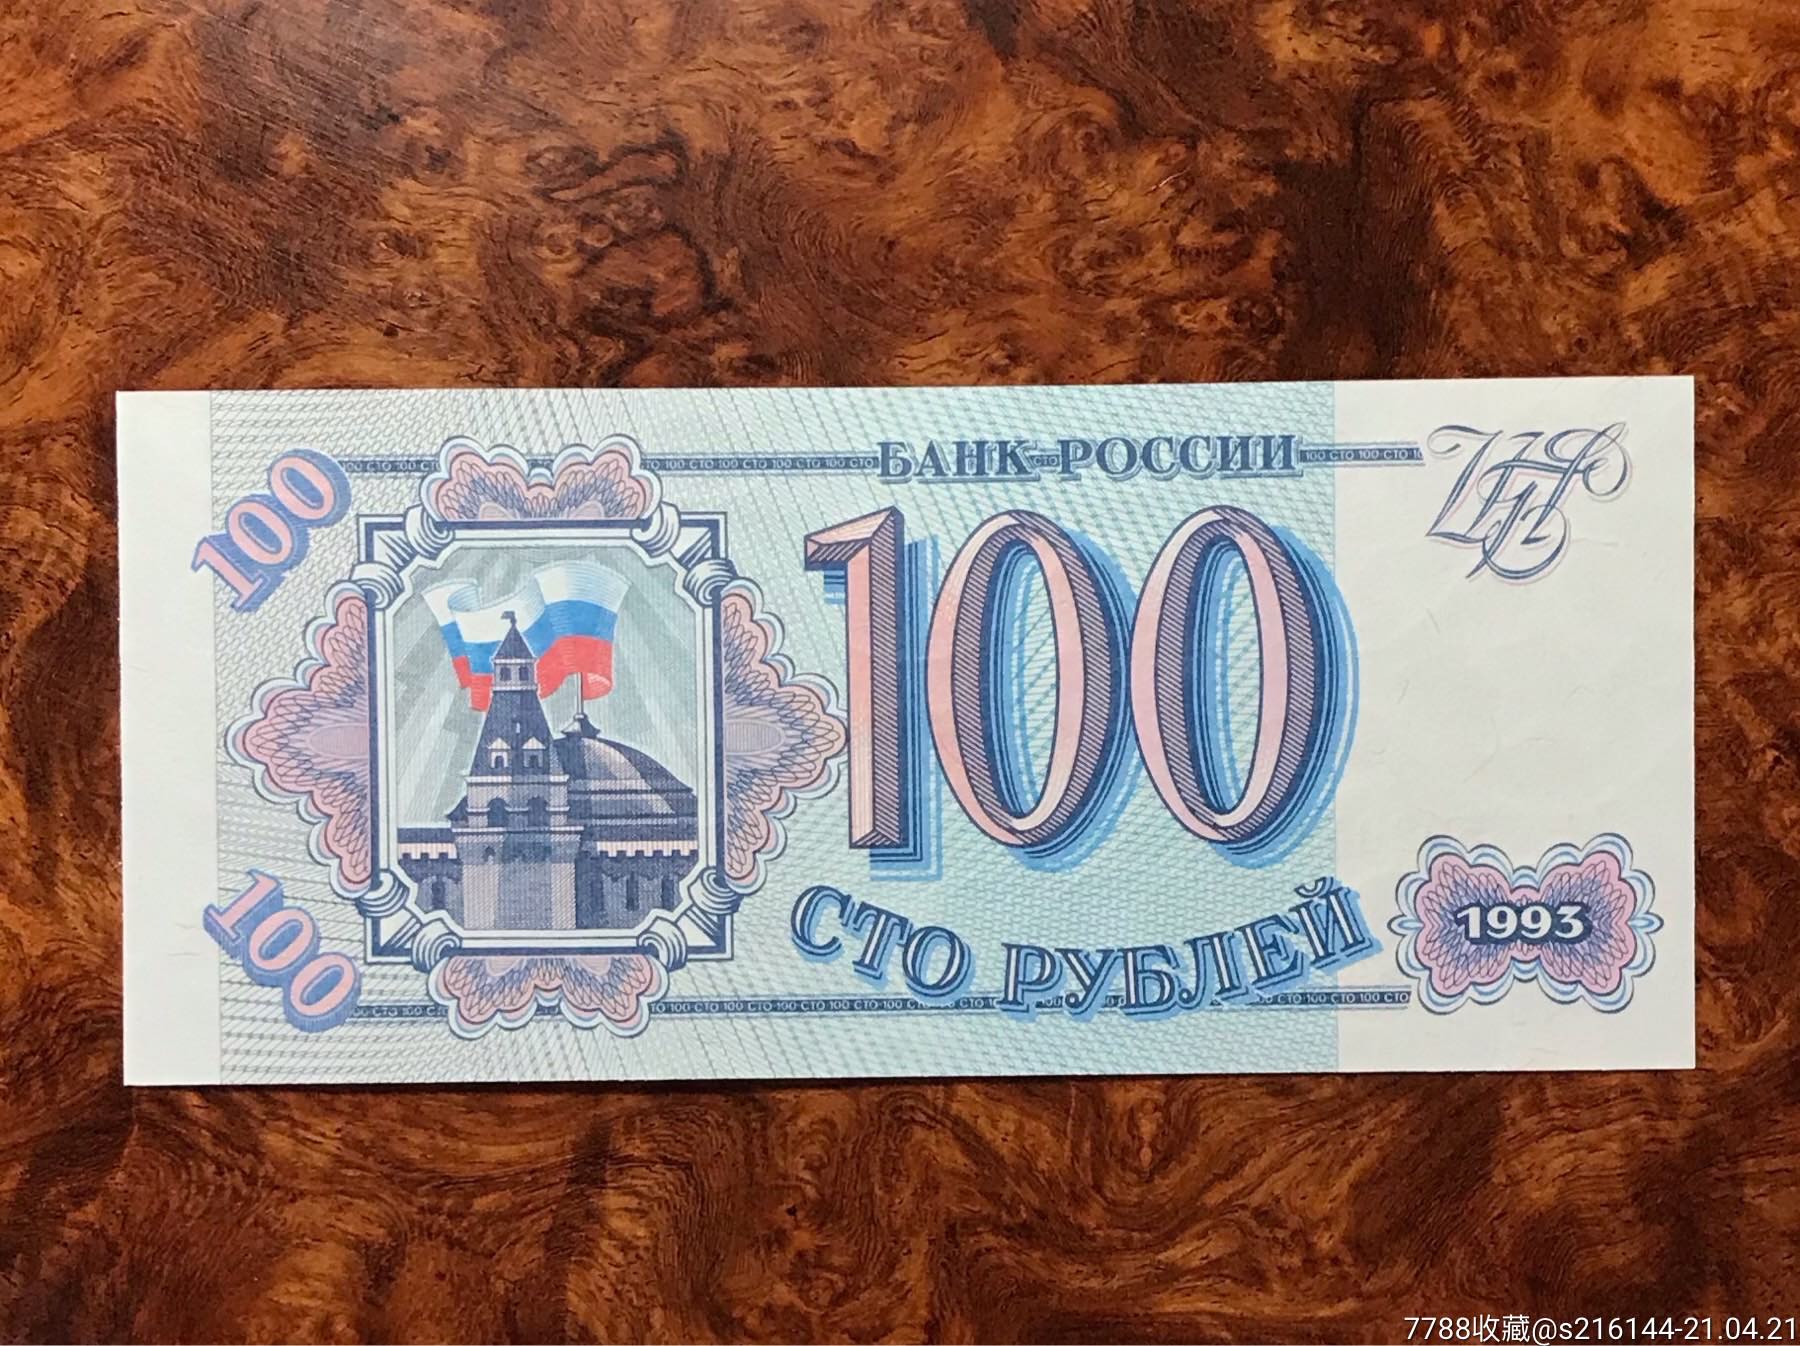 俄罗斯卢布100元图片-图库-五毛网